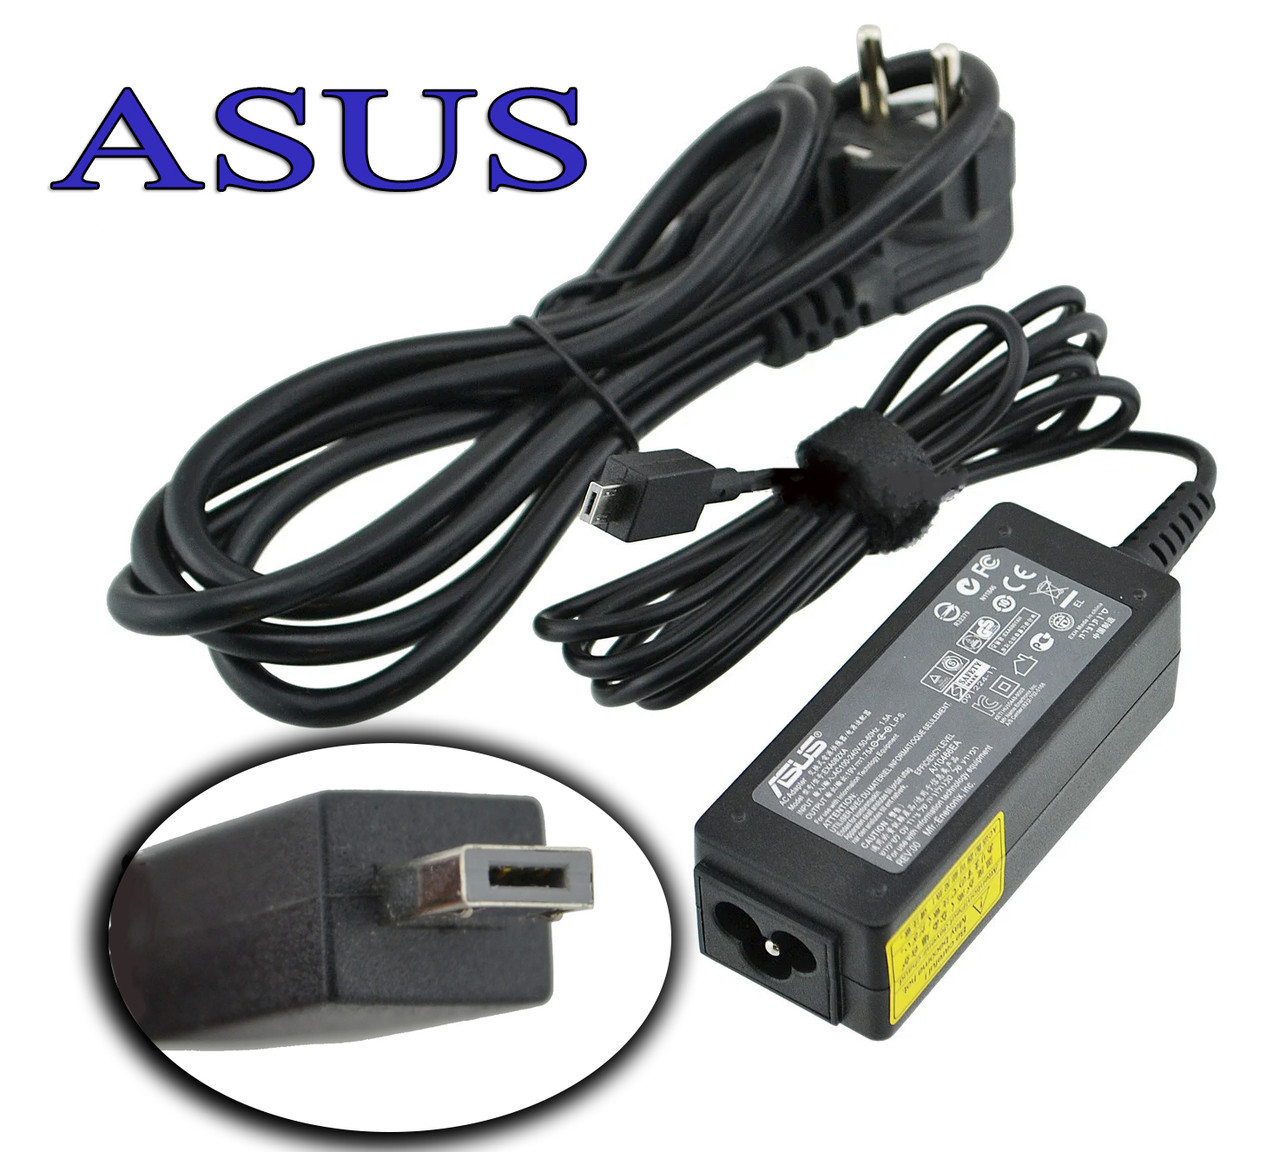 Зарядий пристрій для ноутбука Asus 19V 1.75A 33W X205T M-plug адаптер живлення, блок, зарядне зарядка